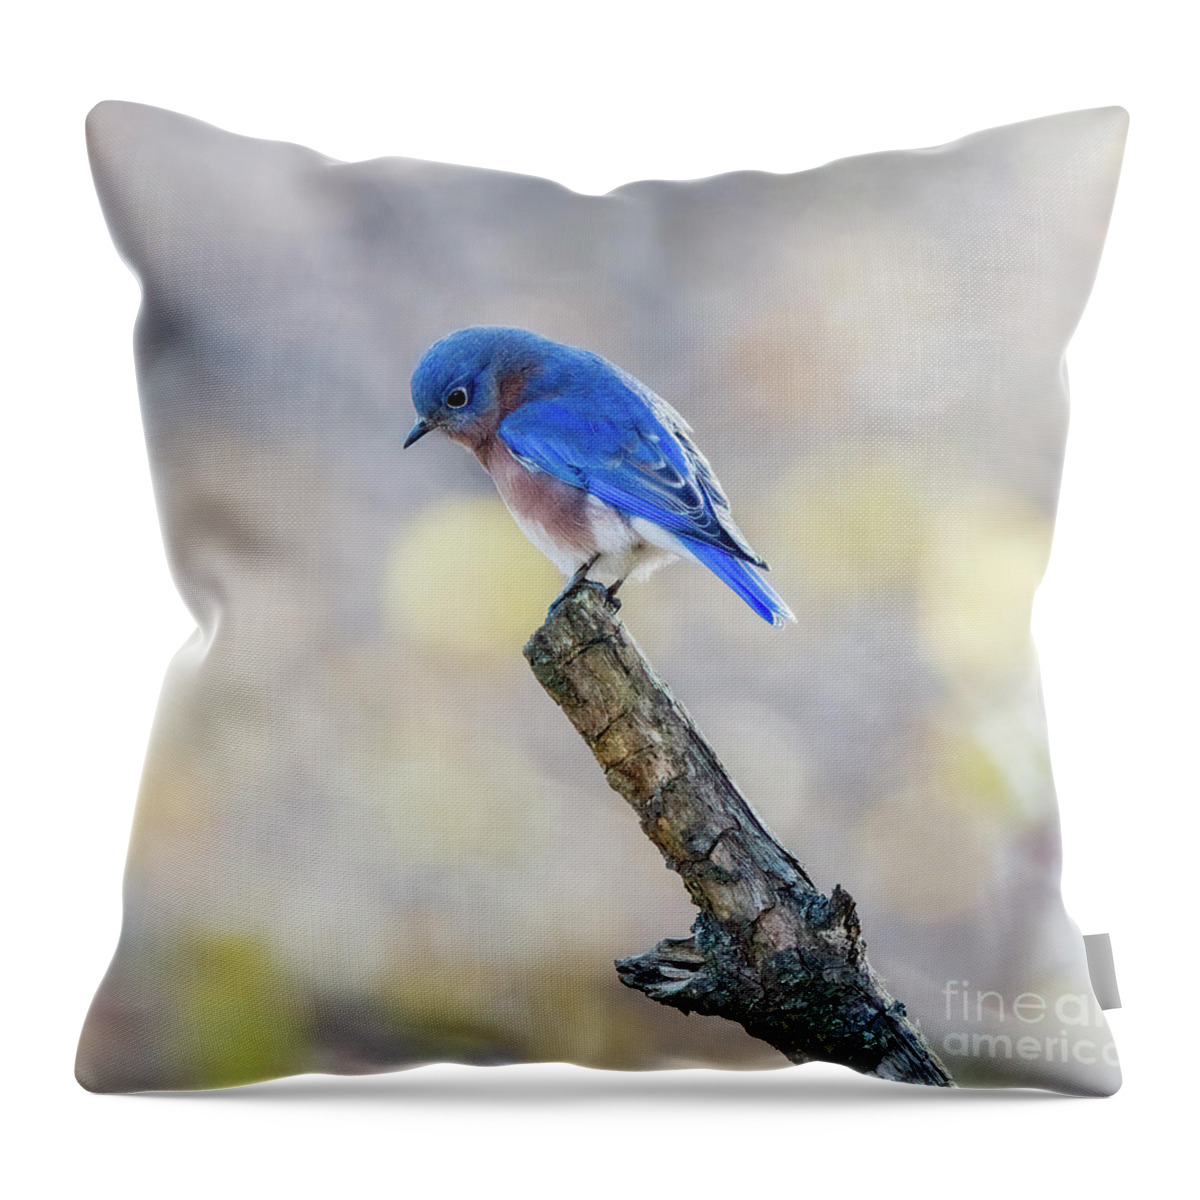 Bluebird Throw Pillow featuring the photograph Eastern Bluebird Bowed in Prayer by Sandra Rust